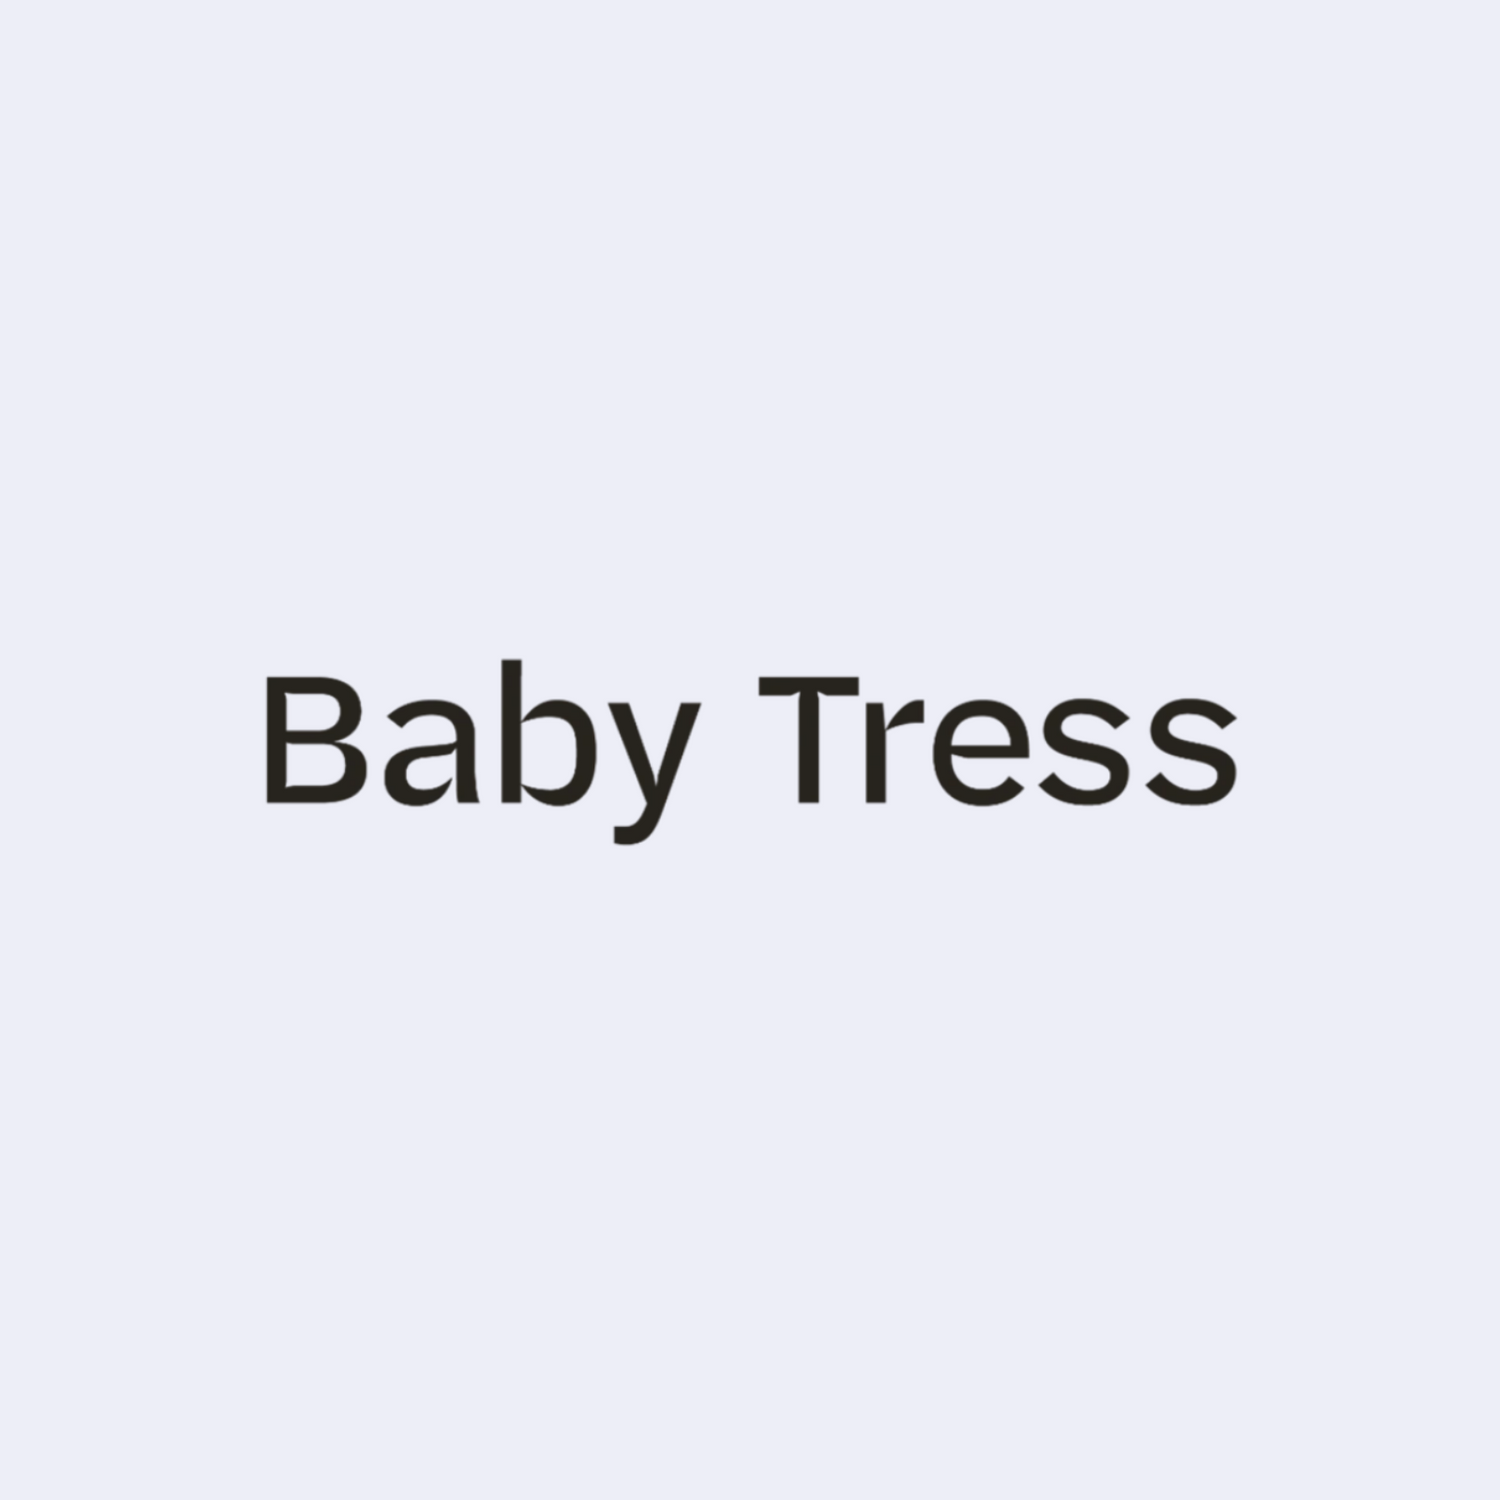 Baby Tress